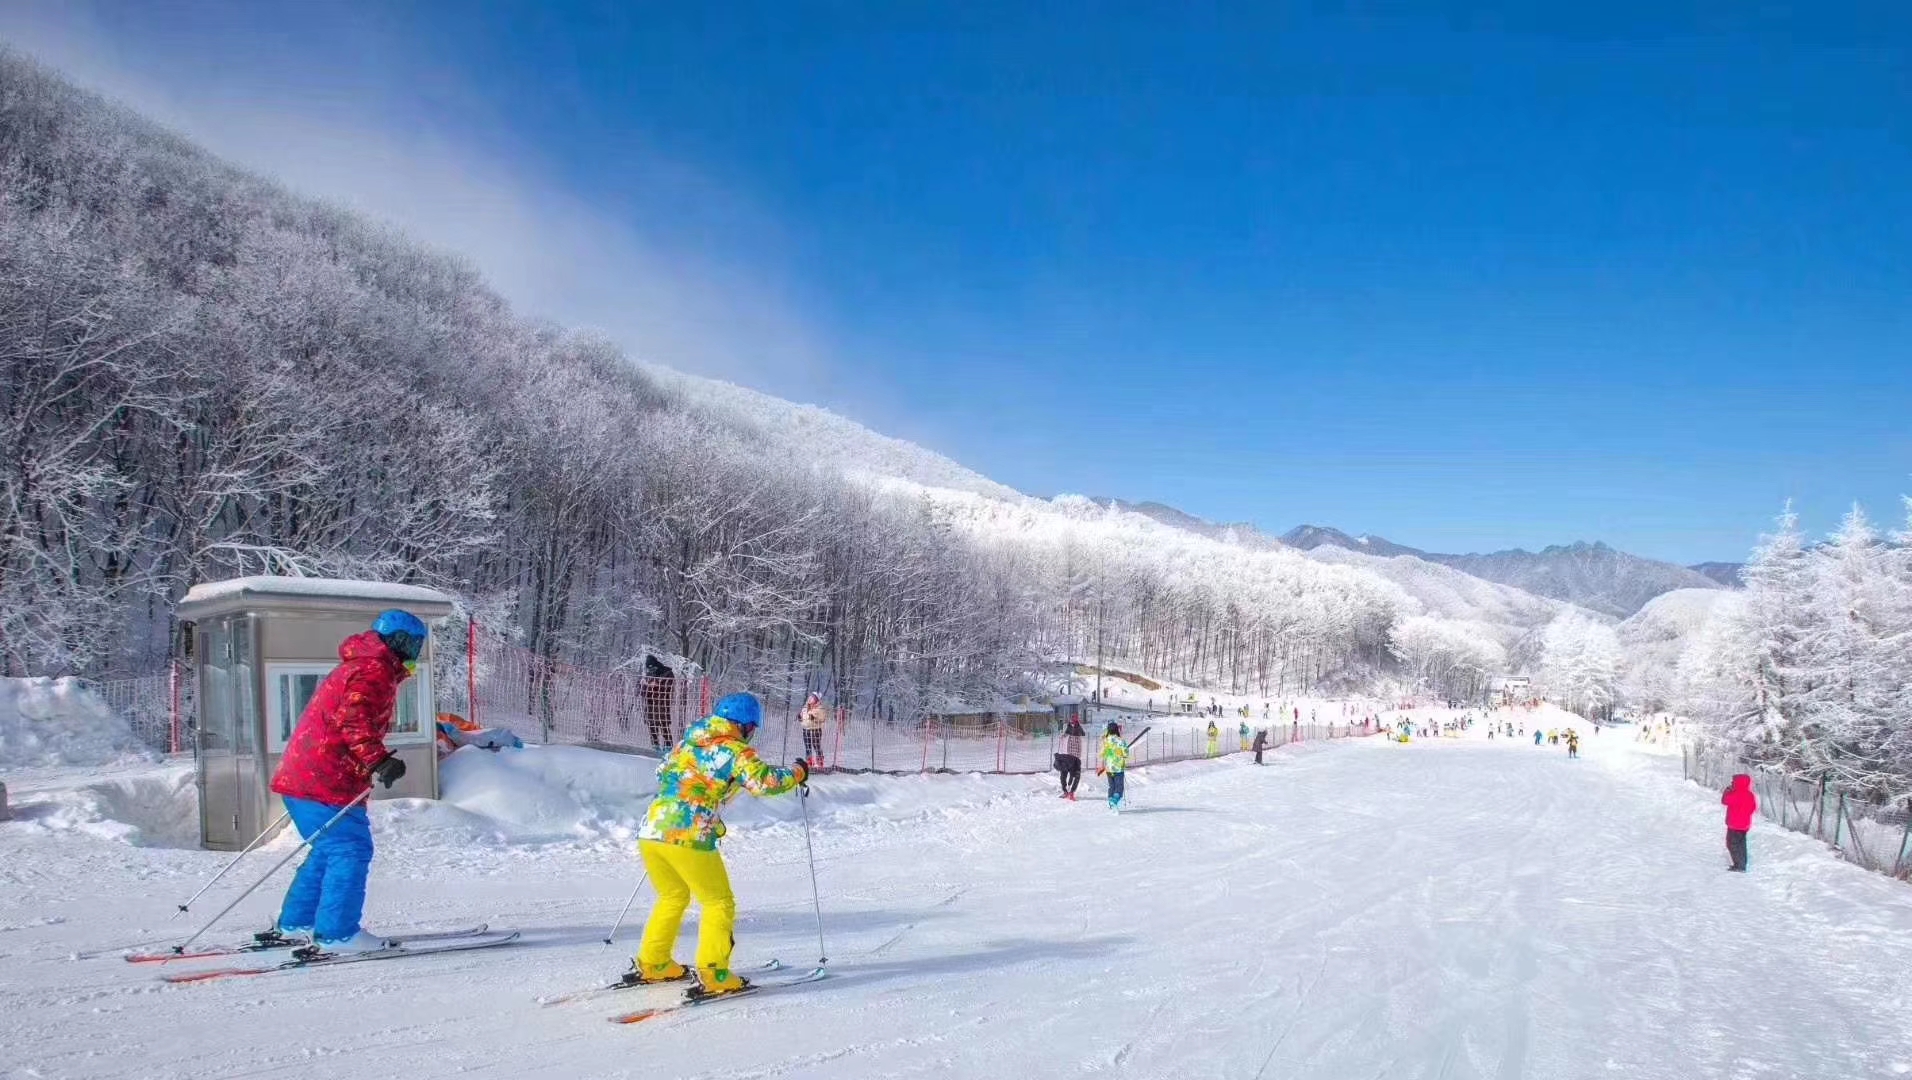 【特价湖北】广州往返湖北神农架、国际滑雪场、三峡游船双飞4天